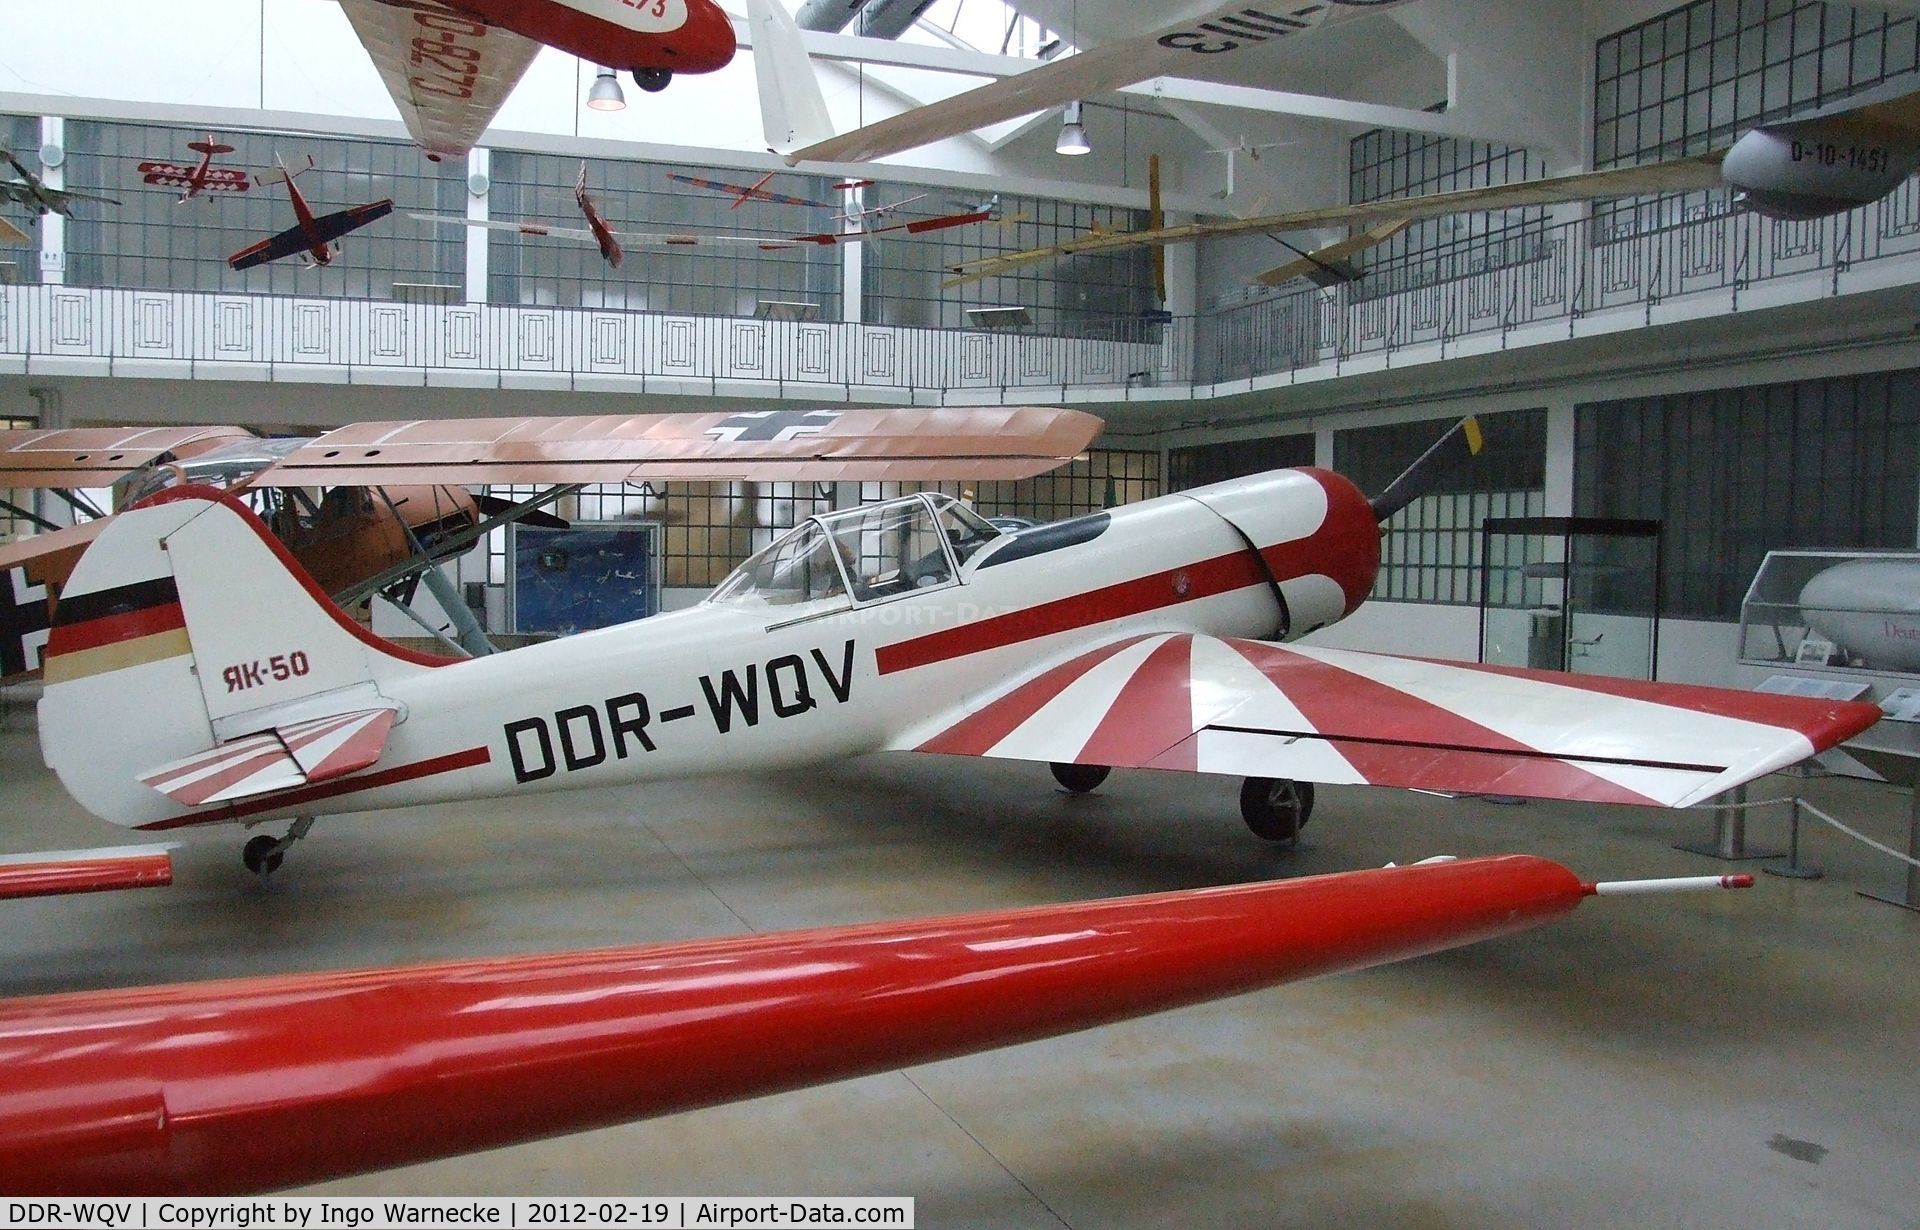 DDR-WQV, Yakovlav Yak-50 C/N 781206, Yakovlev Yak-50 at the Deutsches Museum Flugwerft Schleißheim, Oberschleißheim